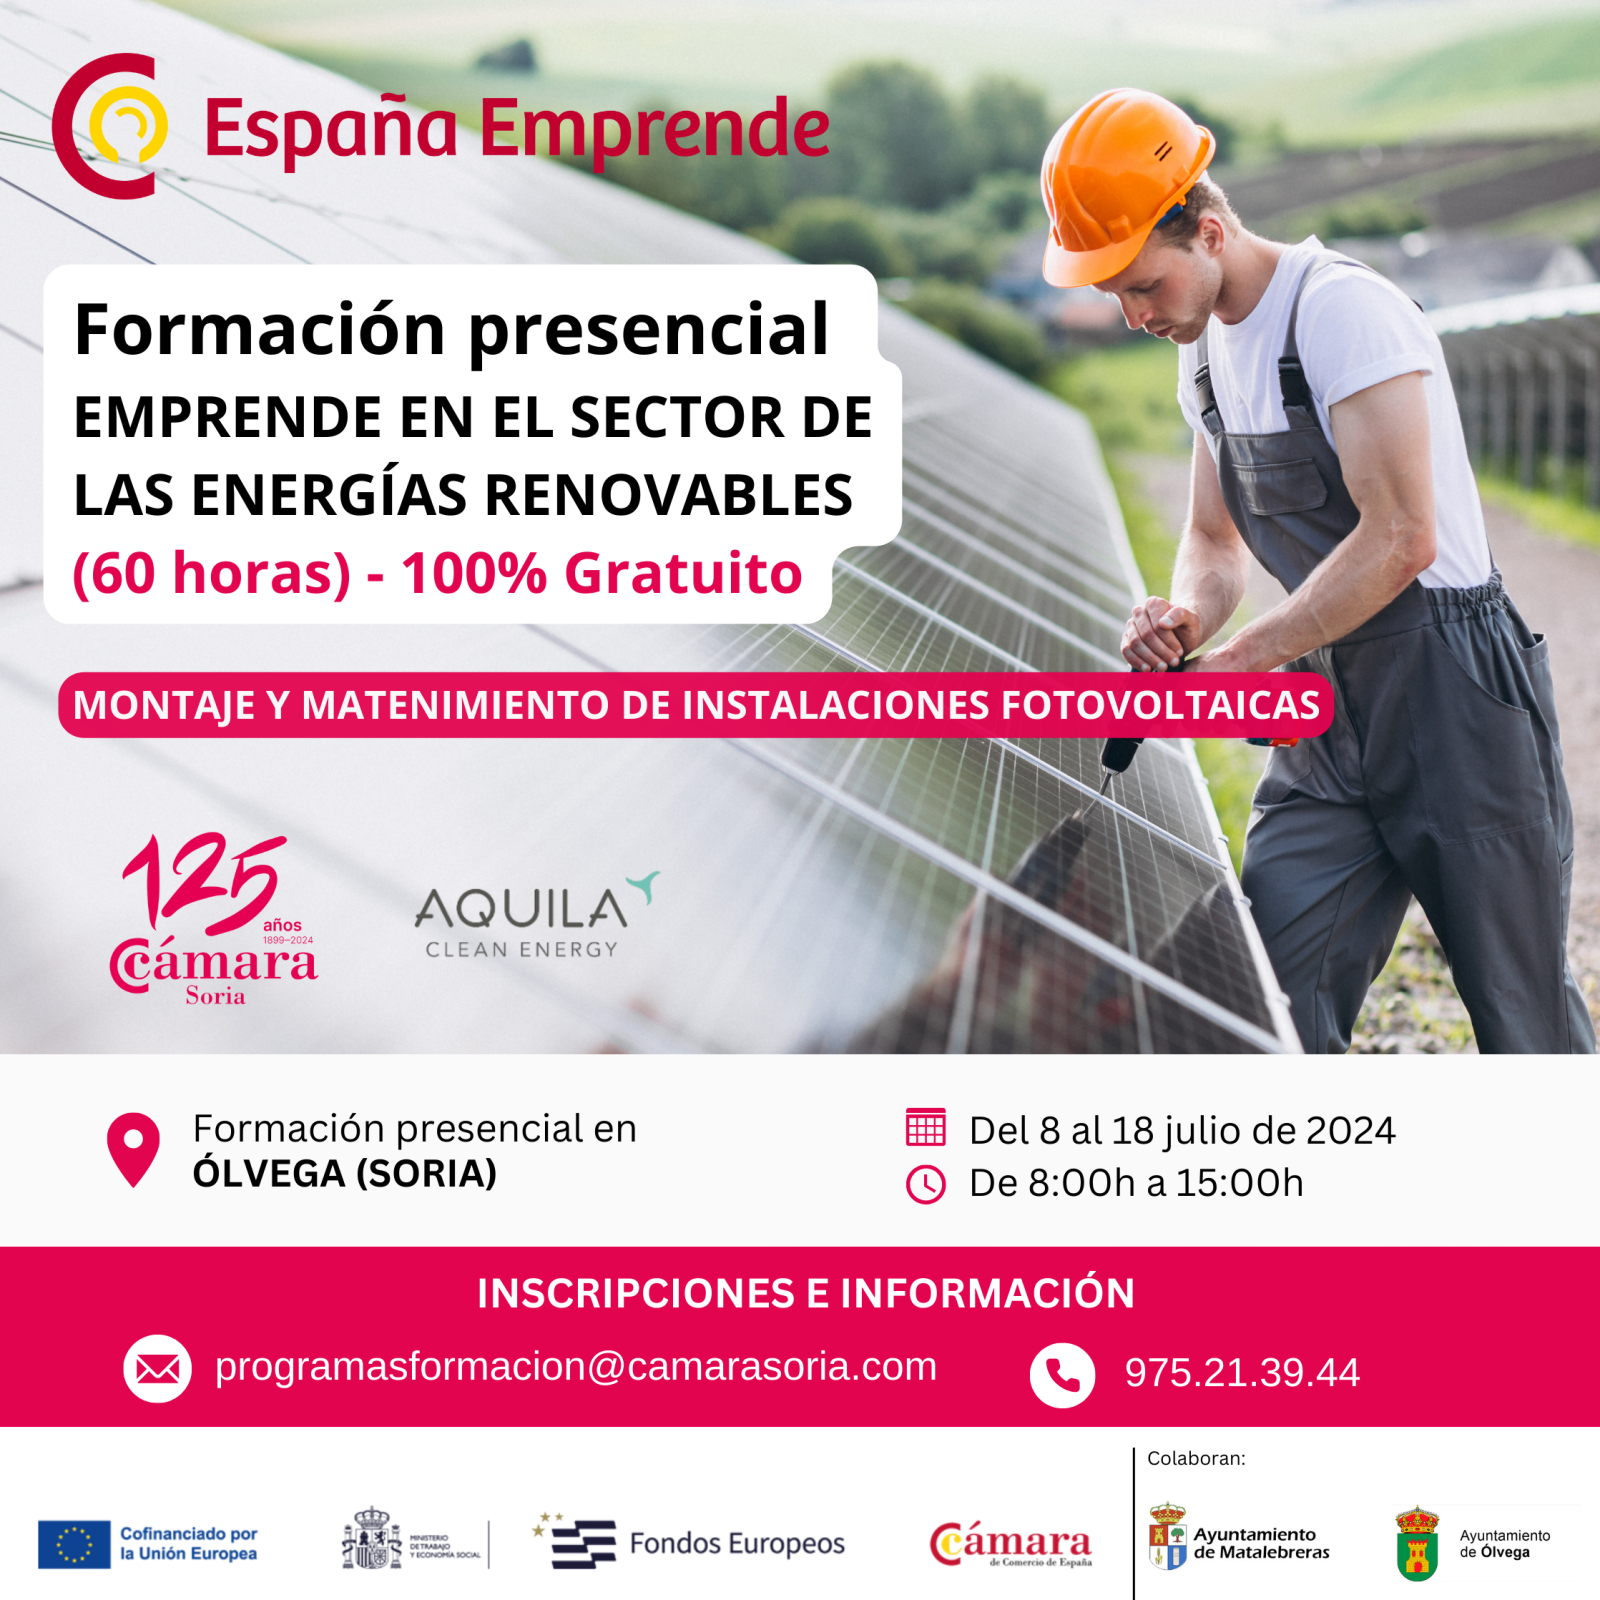 La Cámara organiza un curso presencial gratuito de montaje y mantenimiento de instalaciones fotovoltaicas dentro del programa España Emprende